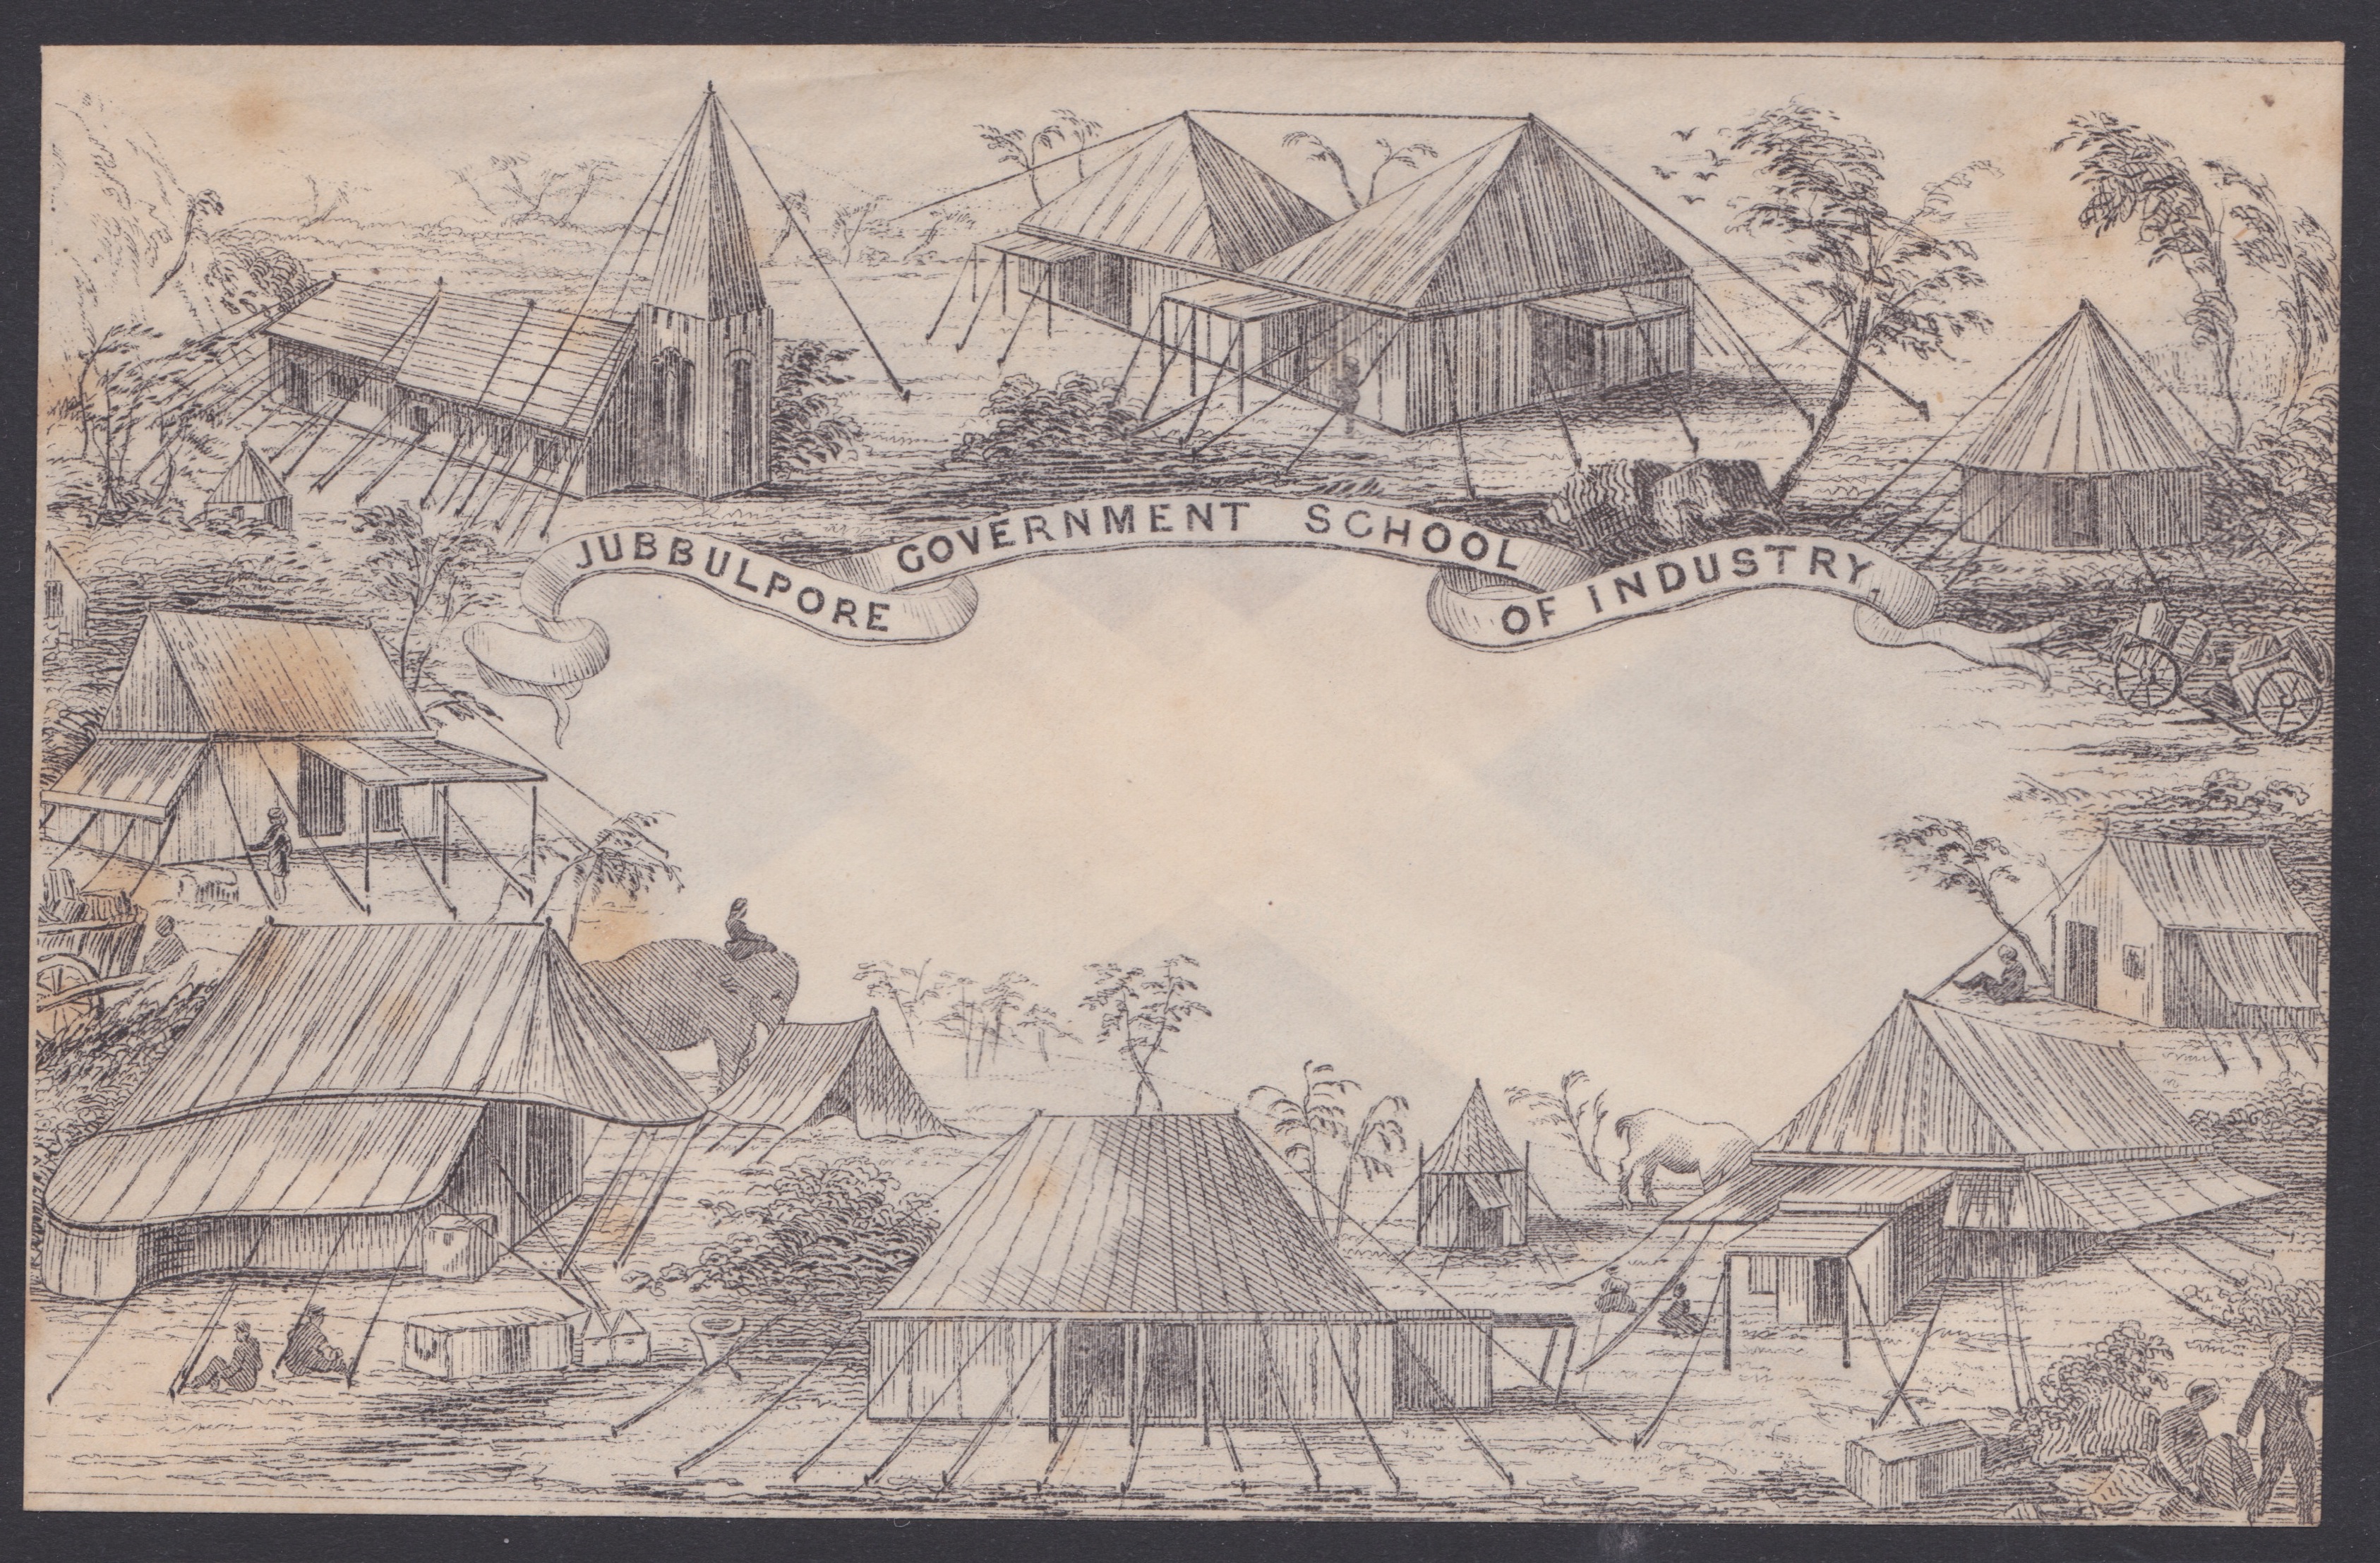 INDIA C.1850 - Unused pictorial envelope (minor staining) entitled "JUBBULPORE GOVERNMENT SCHOOL